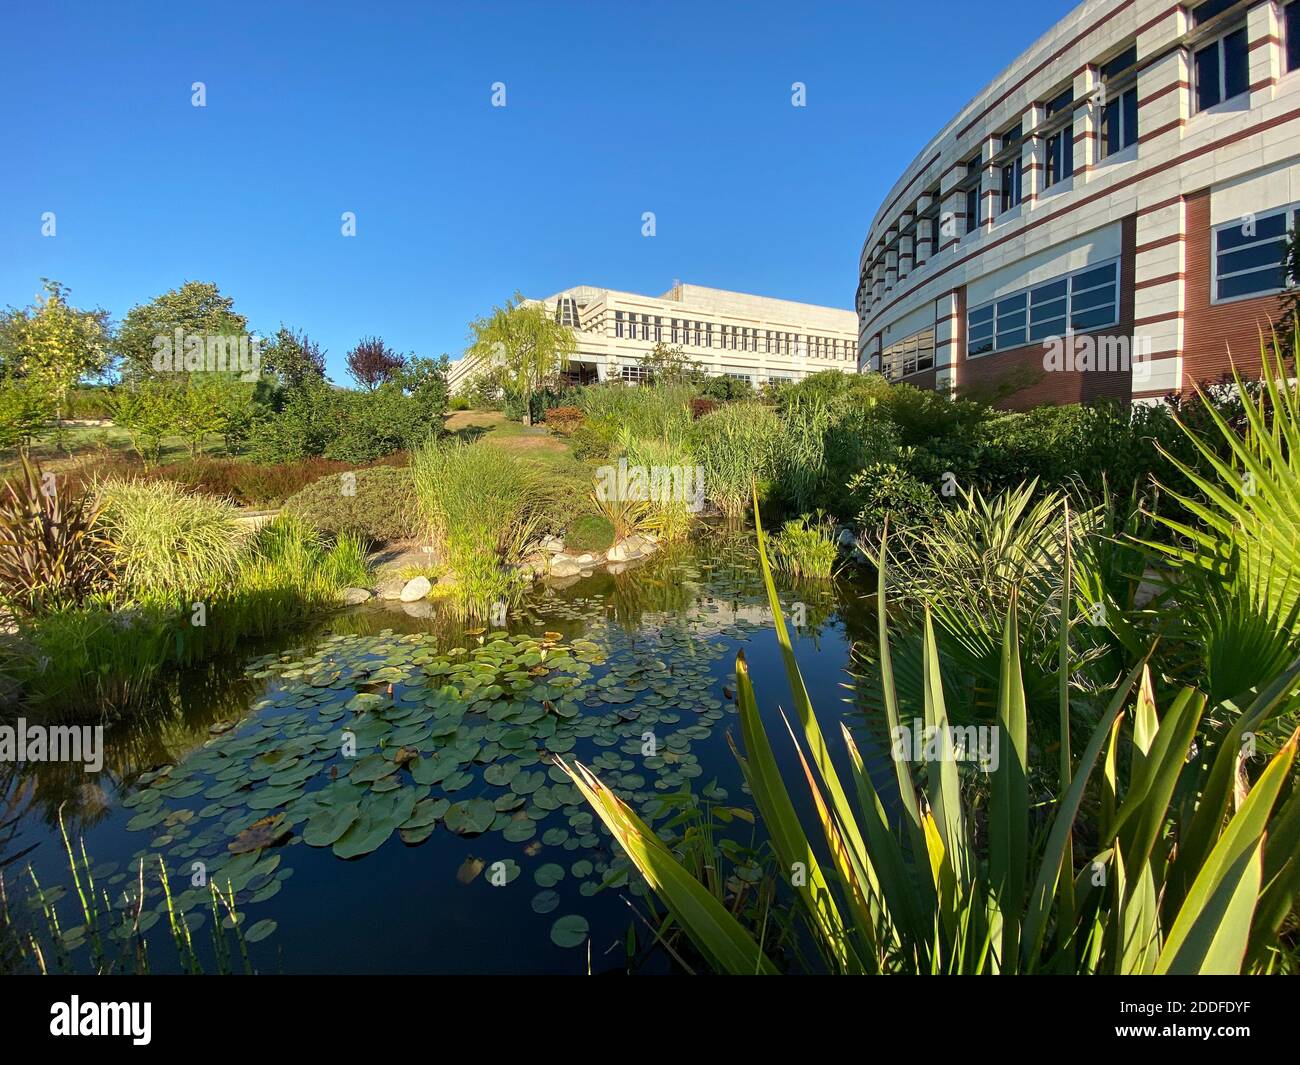 Natürlicher grüner Park mit Bäumen, Pflanzen und einem kleinen See mit Lotusblättern. Wunderschönes, ruhiges Hotel. Moderne Architektur Steinbeton Gebäude. Stockfoto